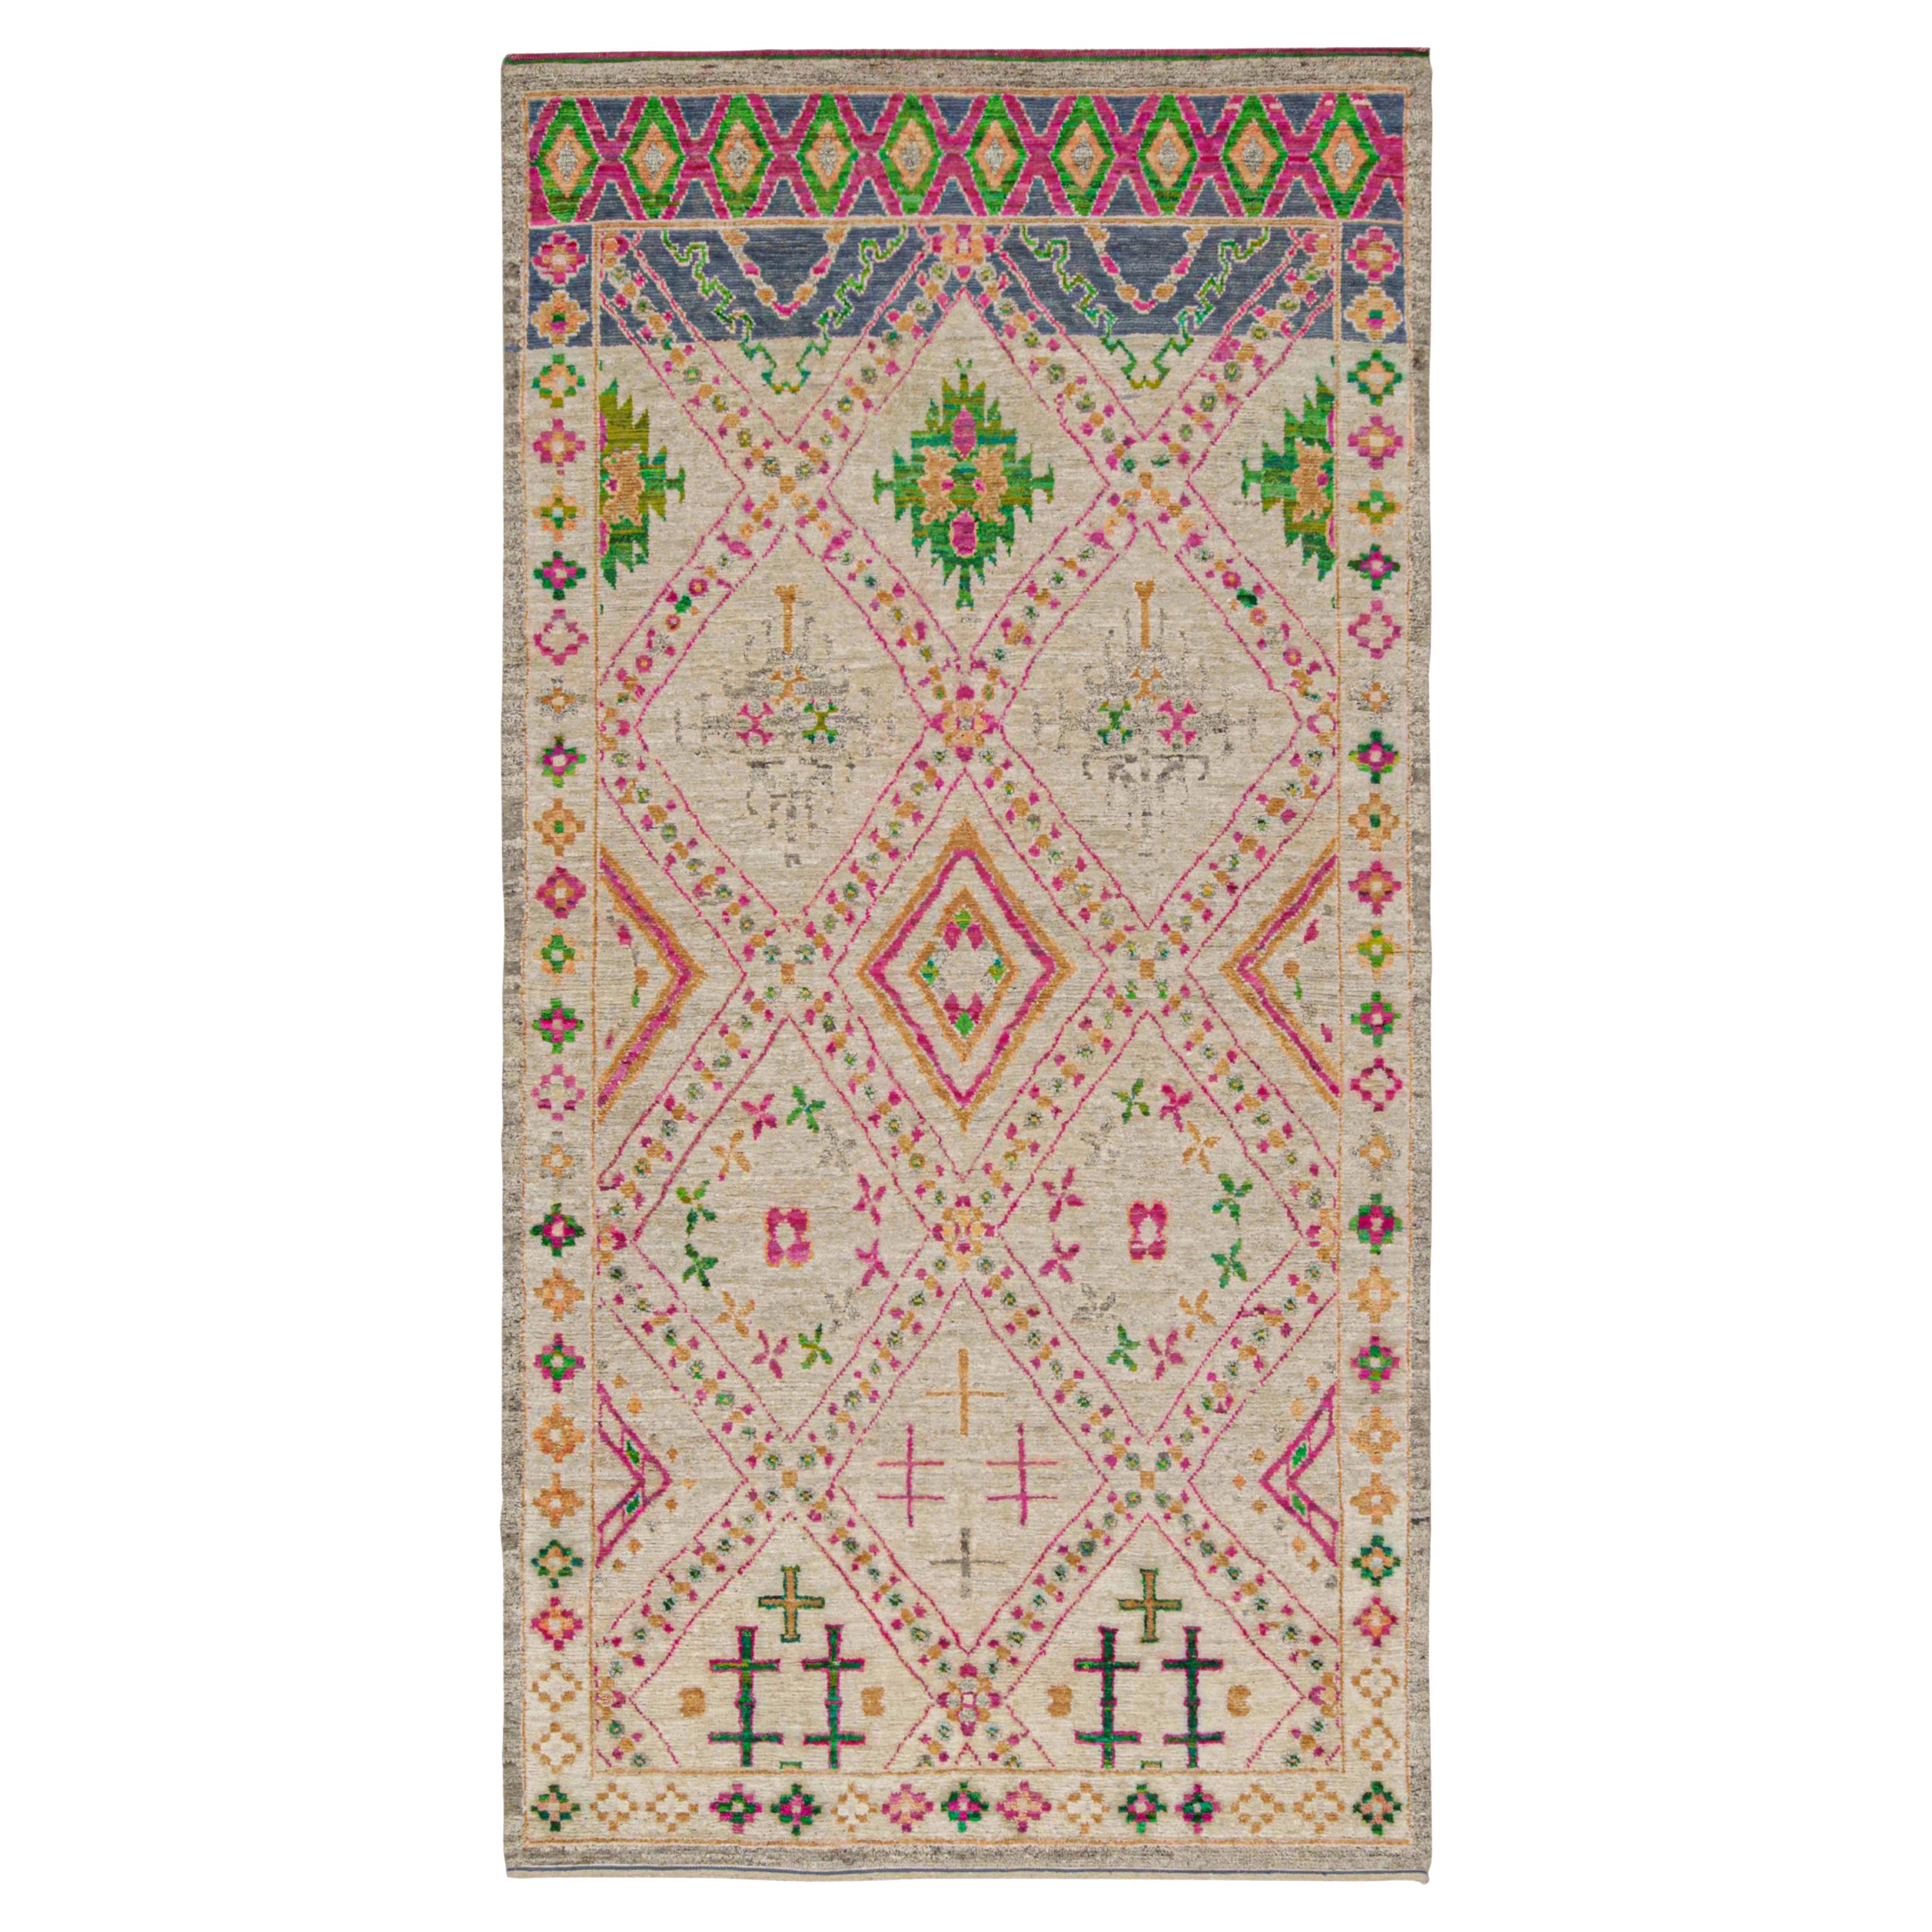 Rug & Kilim's Marokkanischer Teppich in Beige mit lebhaften geometrischen Mustern